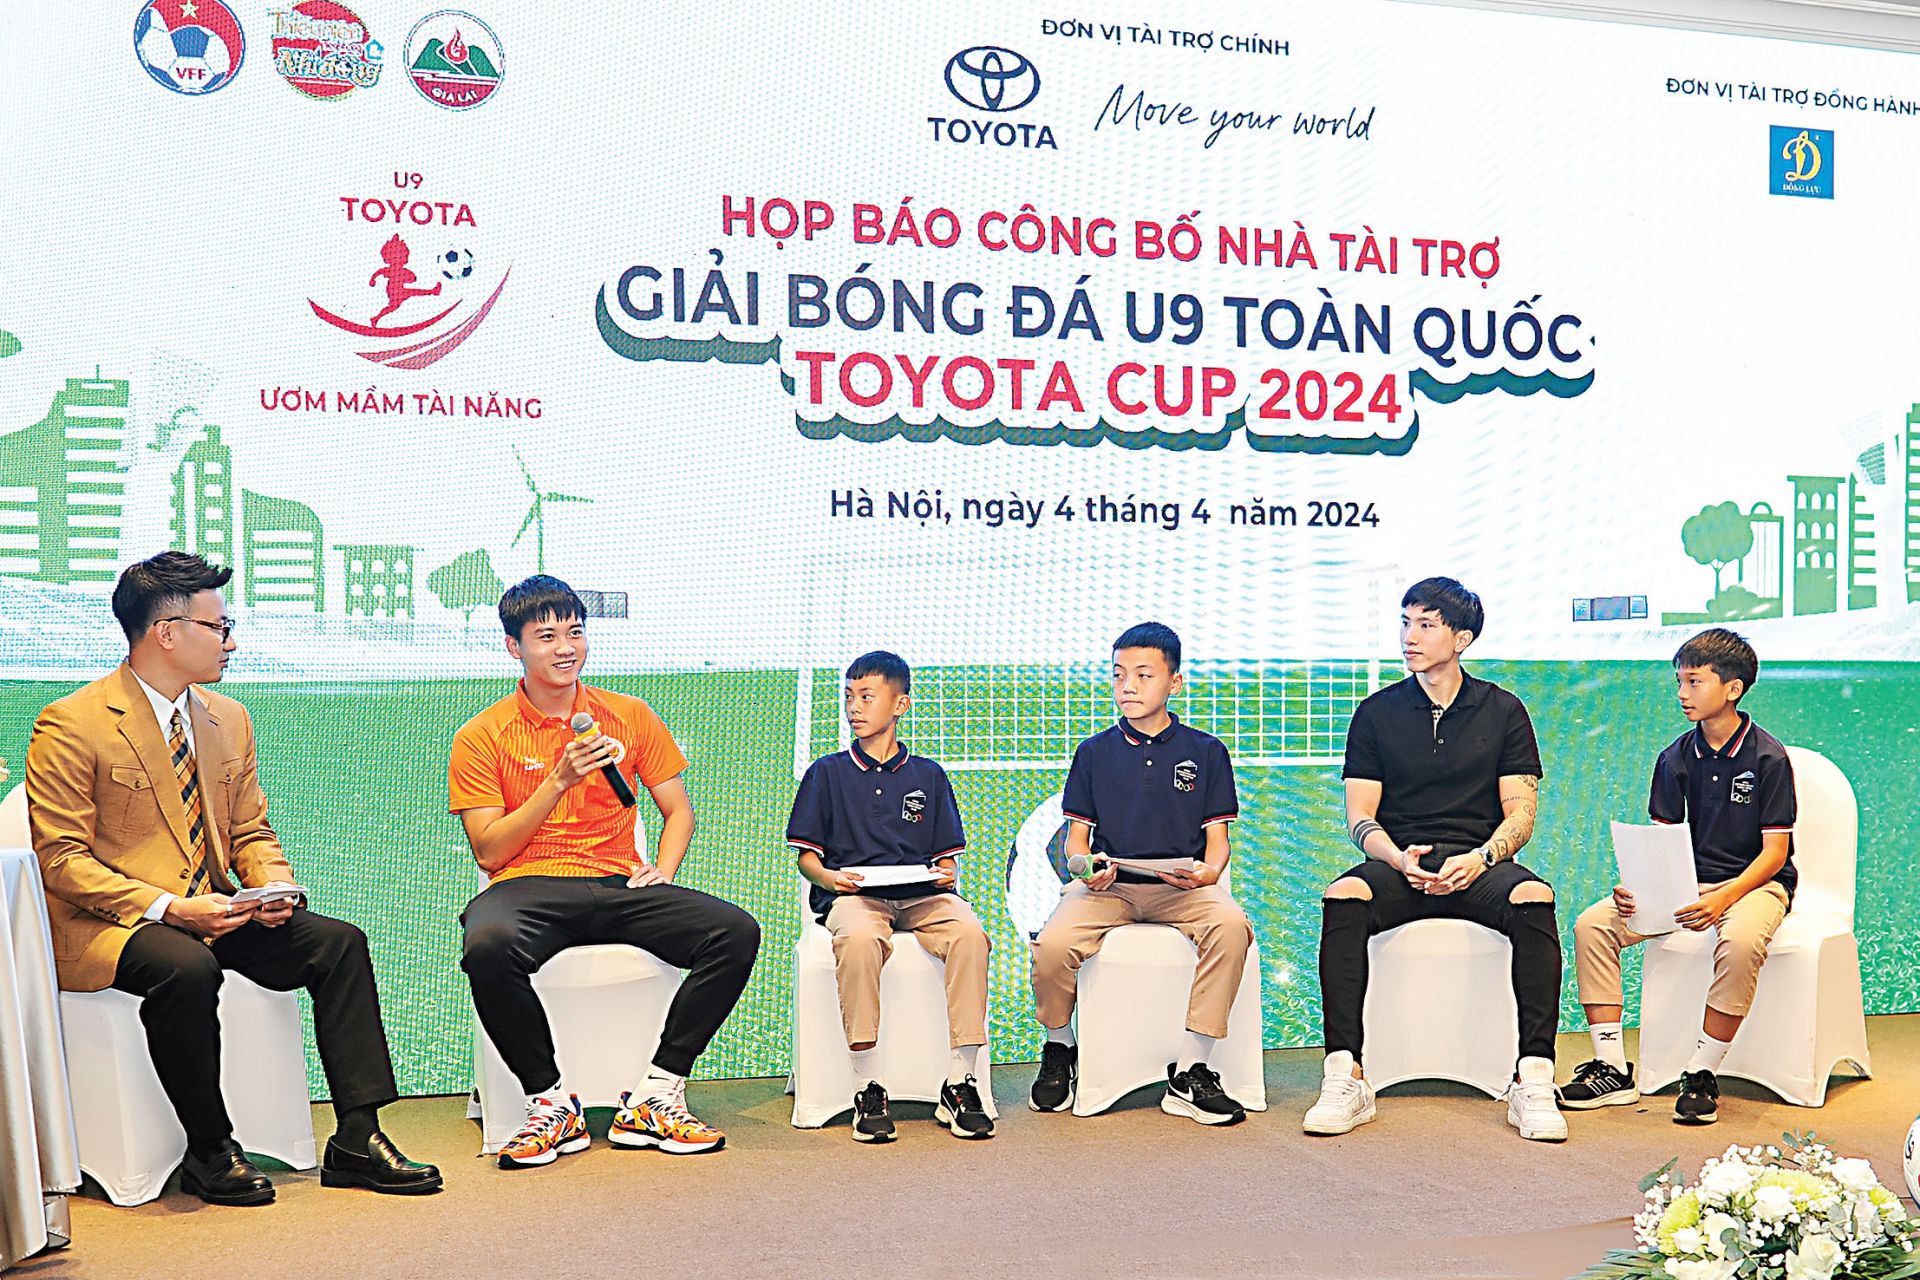 Anh Đoàn Văn Hậu
(áo đen) và anh
Nguyễn Hữu Thực
(áo cam) giao lưu cùng
các cầu thủ nhỏ tuổi
trên sân khấu.